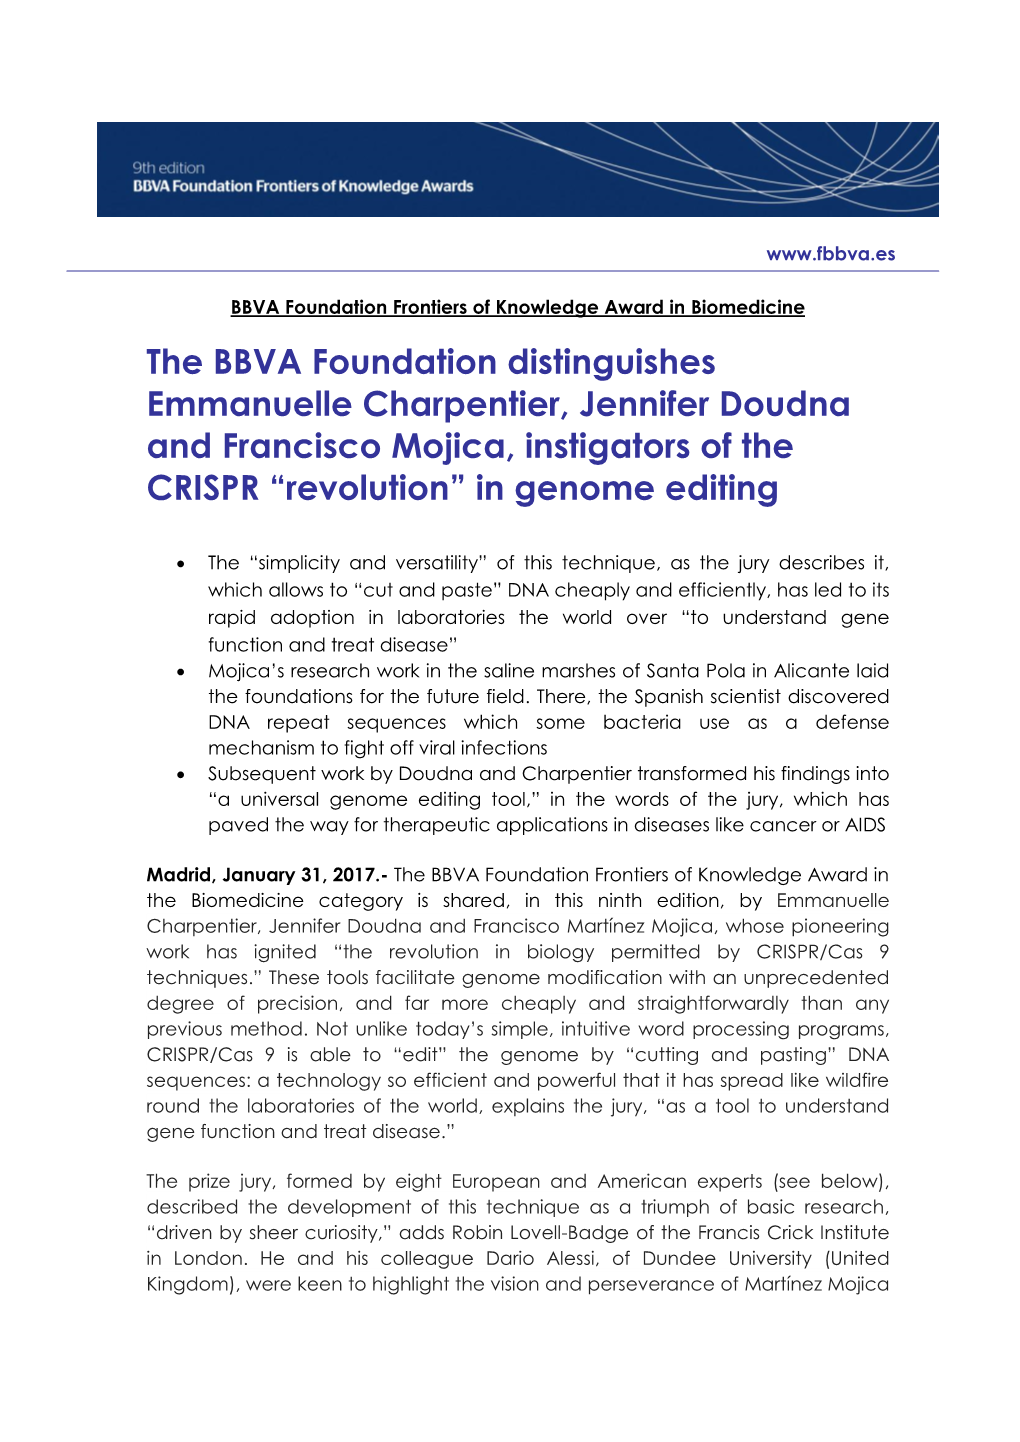 The BBVA Foundation Distinguishes Emmanuelle Charpentier, Jennifer Doudna and Francisco Mojica, Instigators of the CRISPR “Revolution” in Genome Editing